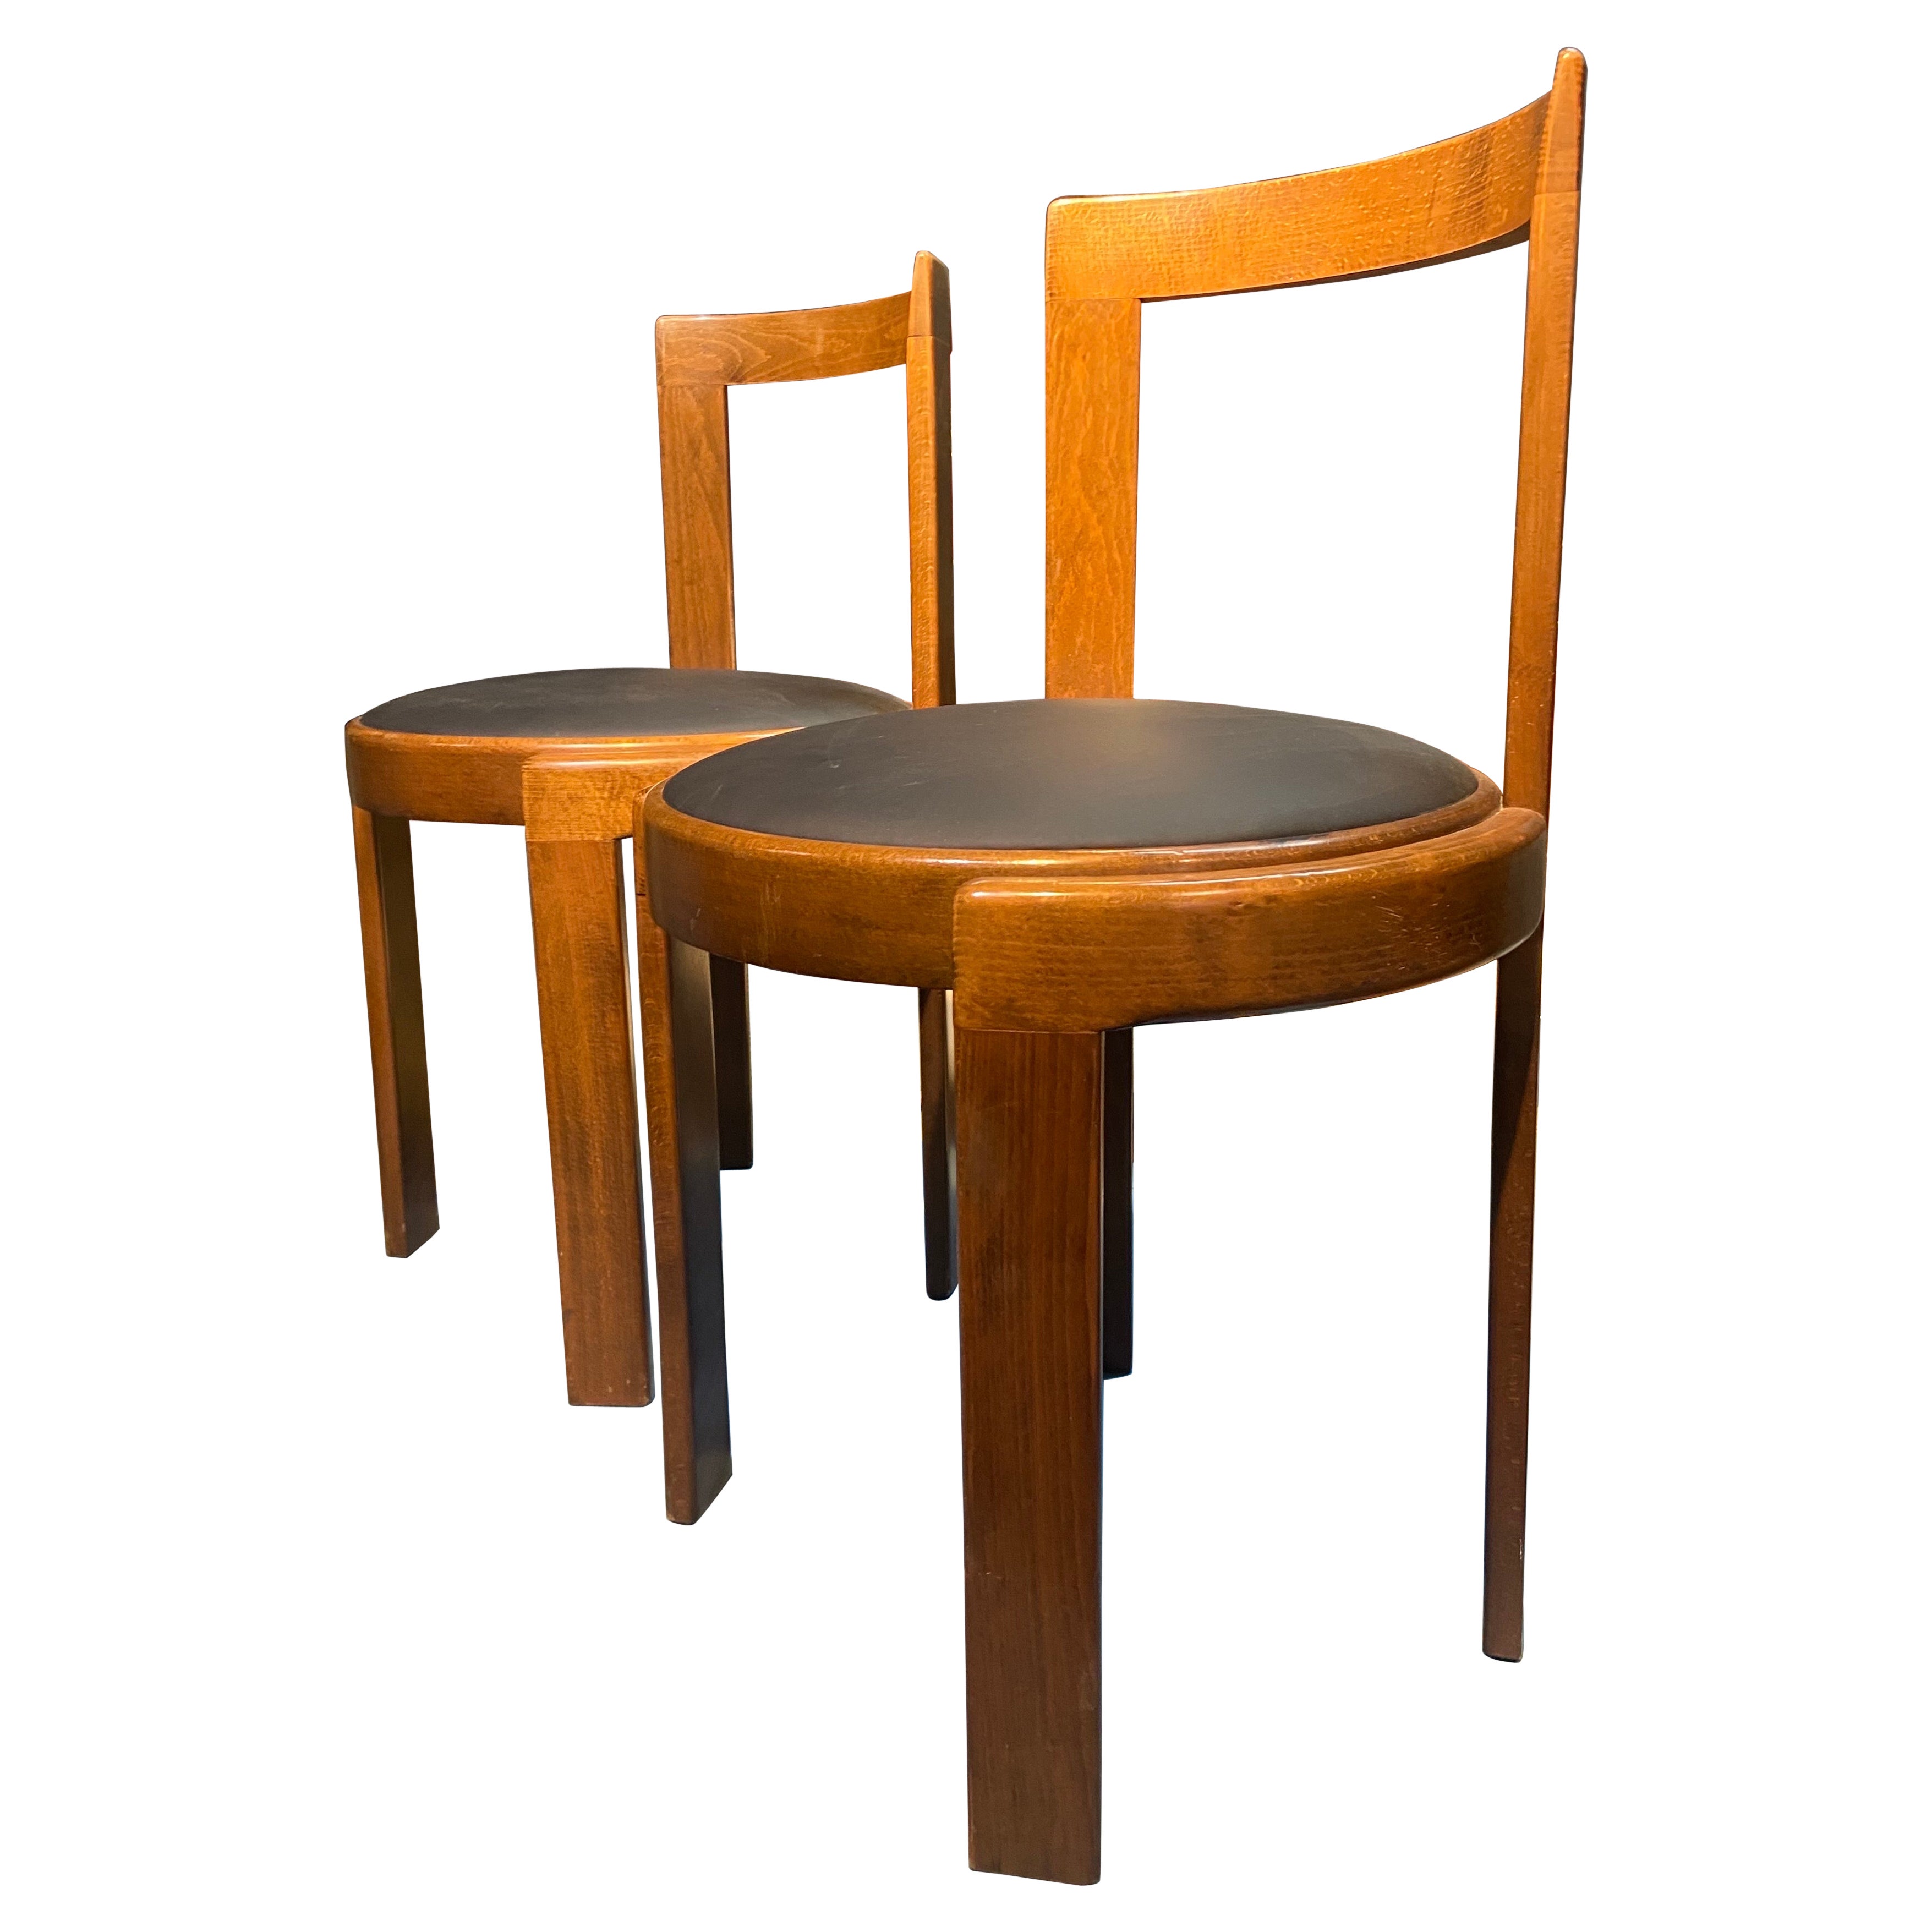 Zwei italienische runde, handgeschnitzte Vintage-Esszimmerstühle aus Holz, 20. Jahrhundert